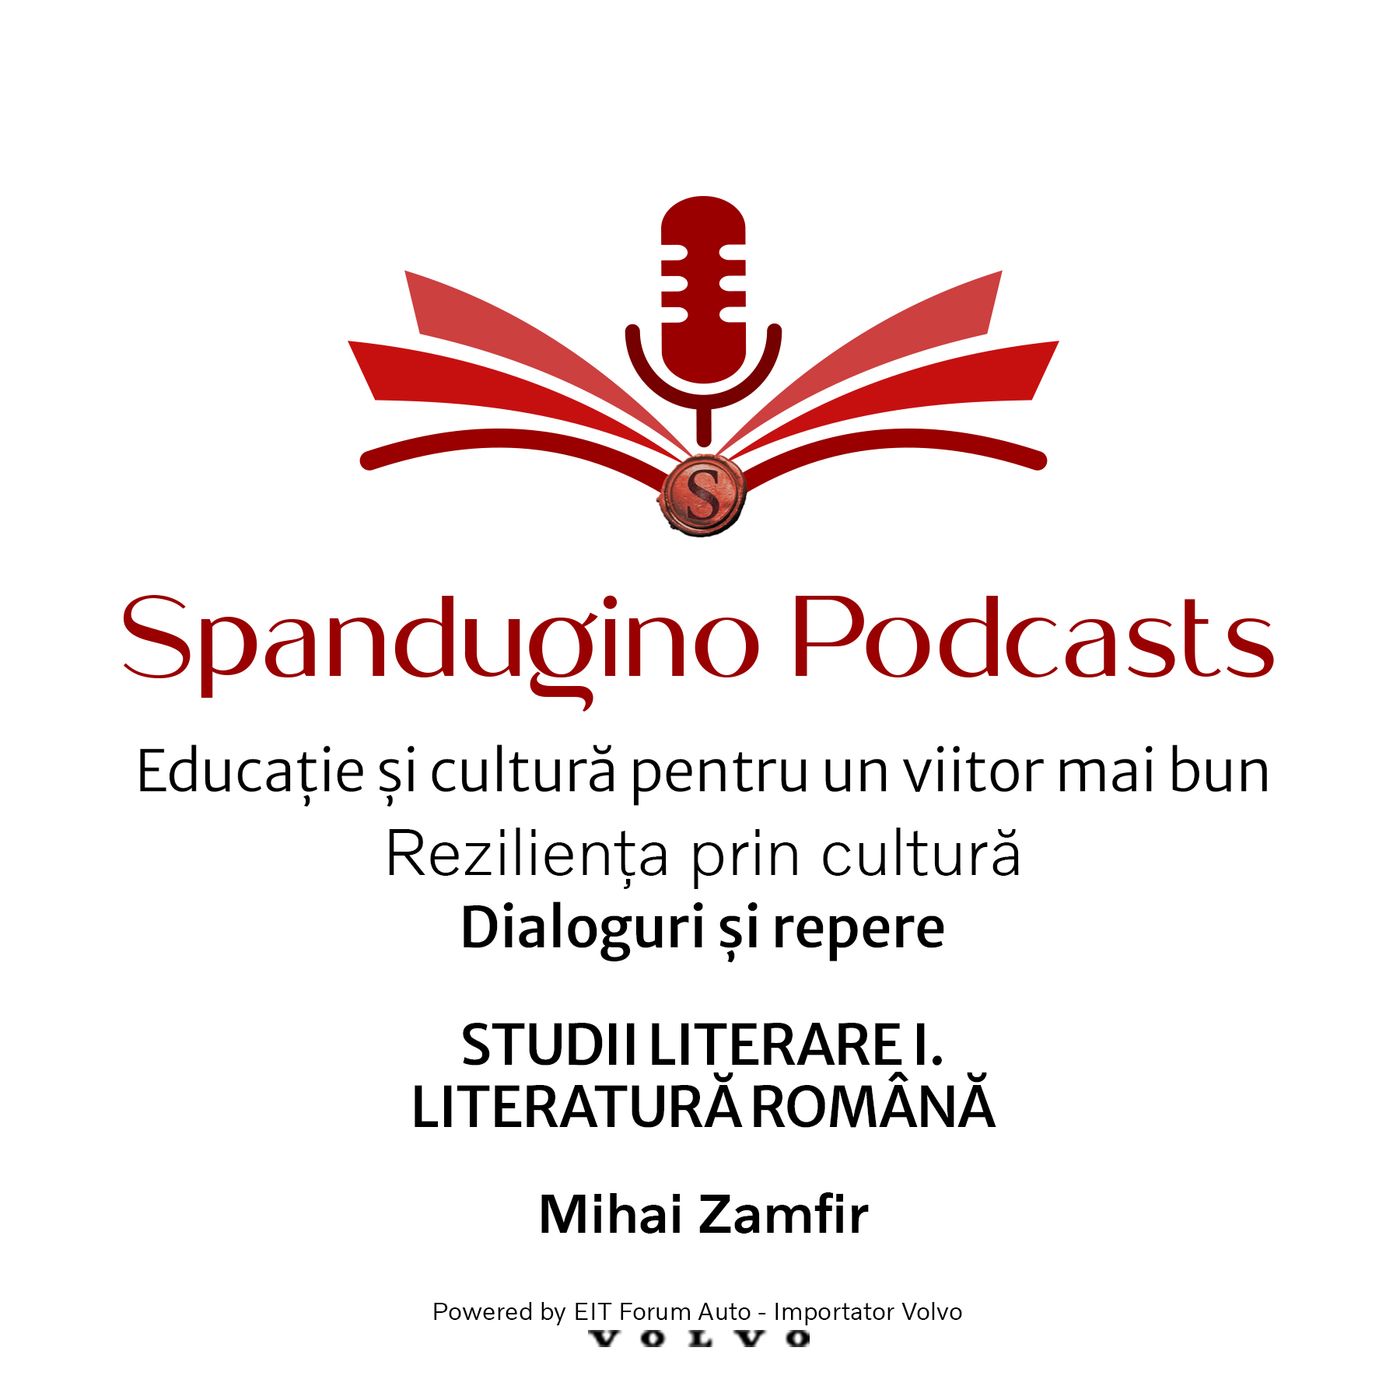 Reziliența prin cultură. Mihai Zamfir | STUDII LITERARE I. LITERATURĂ ROMÂNĂ